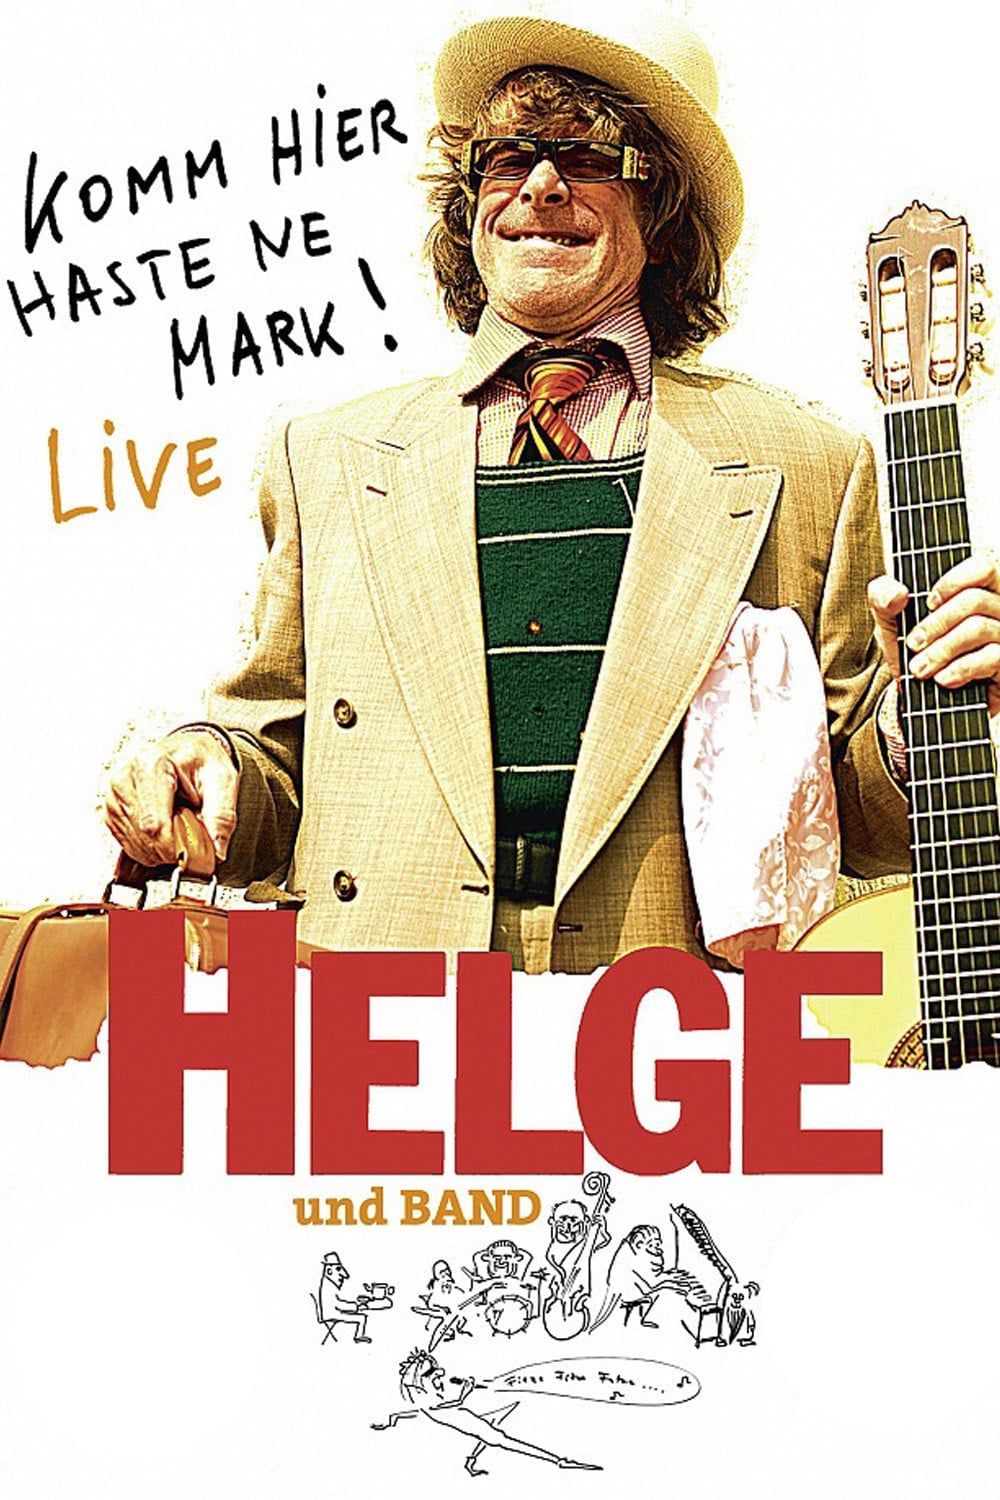 Helge - Komm hier haste ne Mark! Helge und Band live in Berlin (2011)